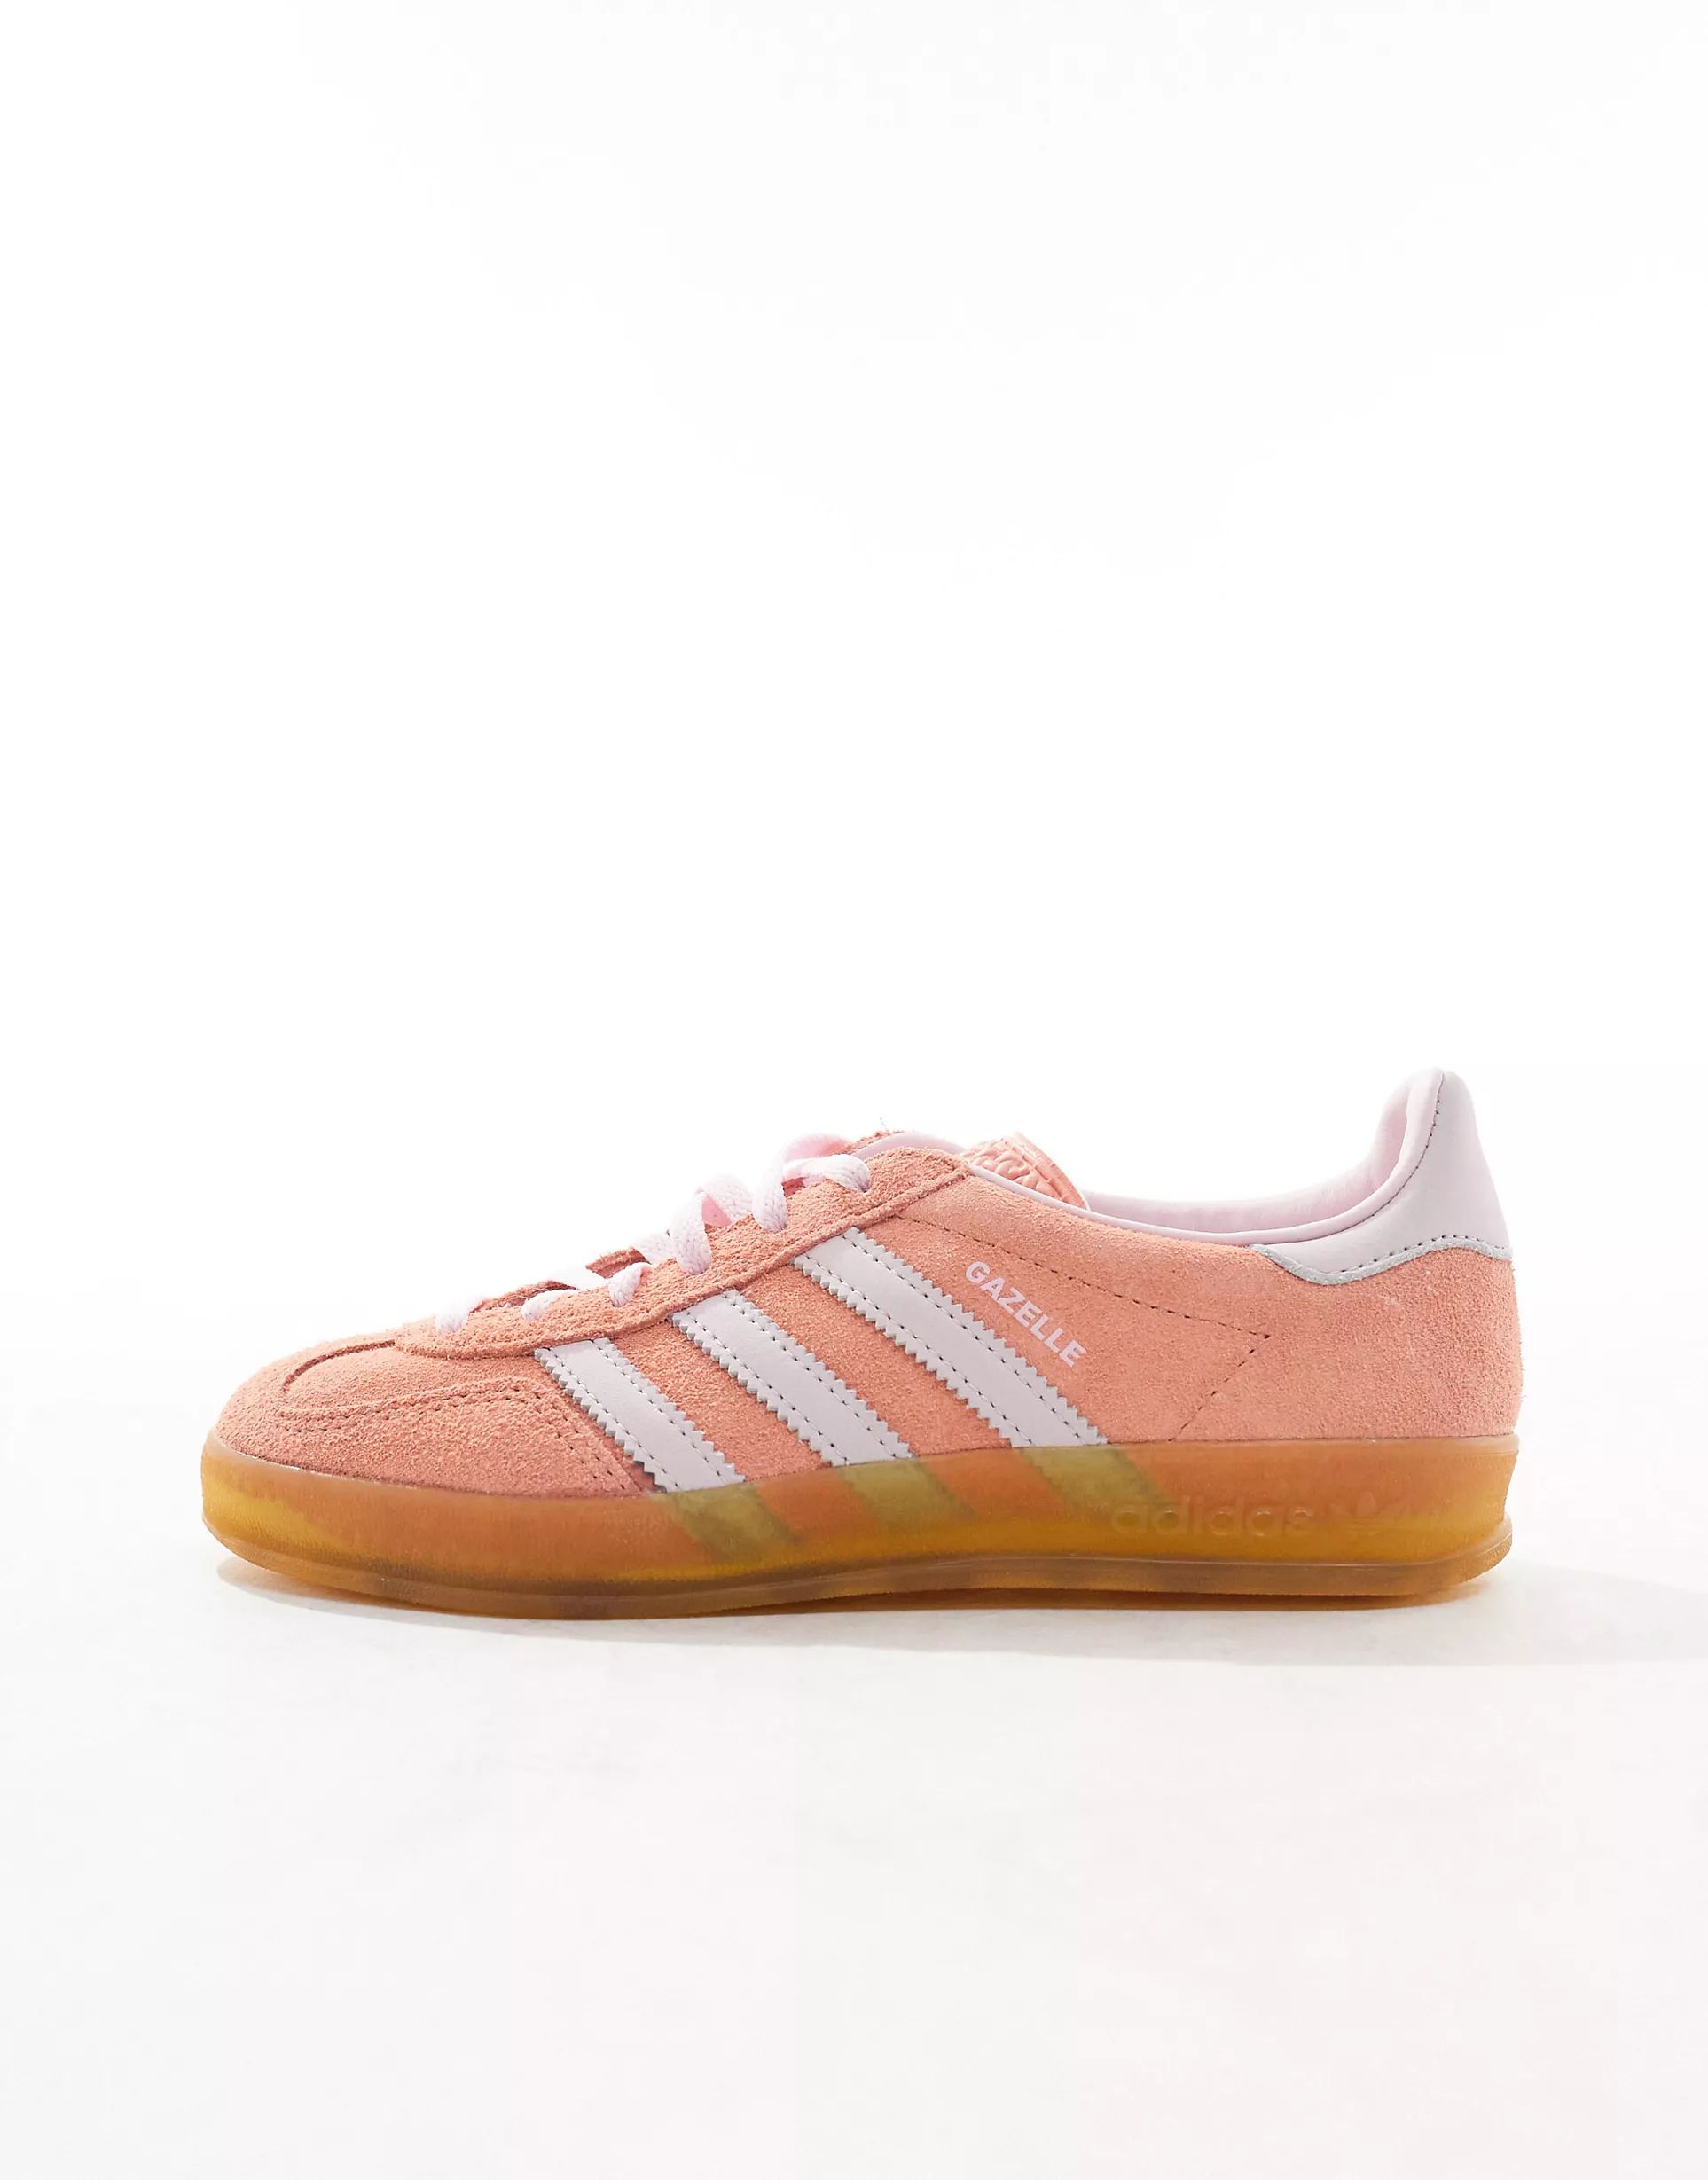 adidas Originals Gazelle Indoor gum sole sneakers in orange and pink | ASOS | ASOS (Global)